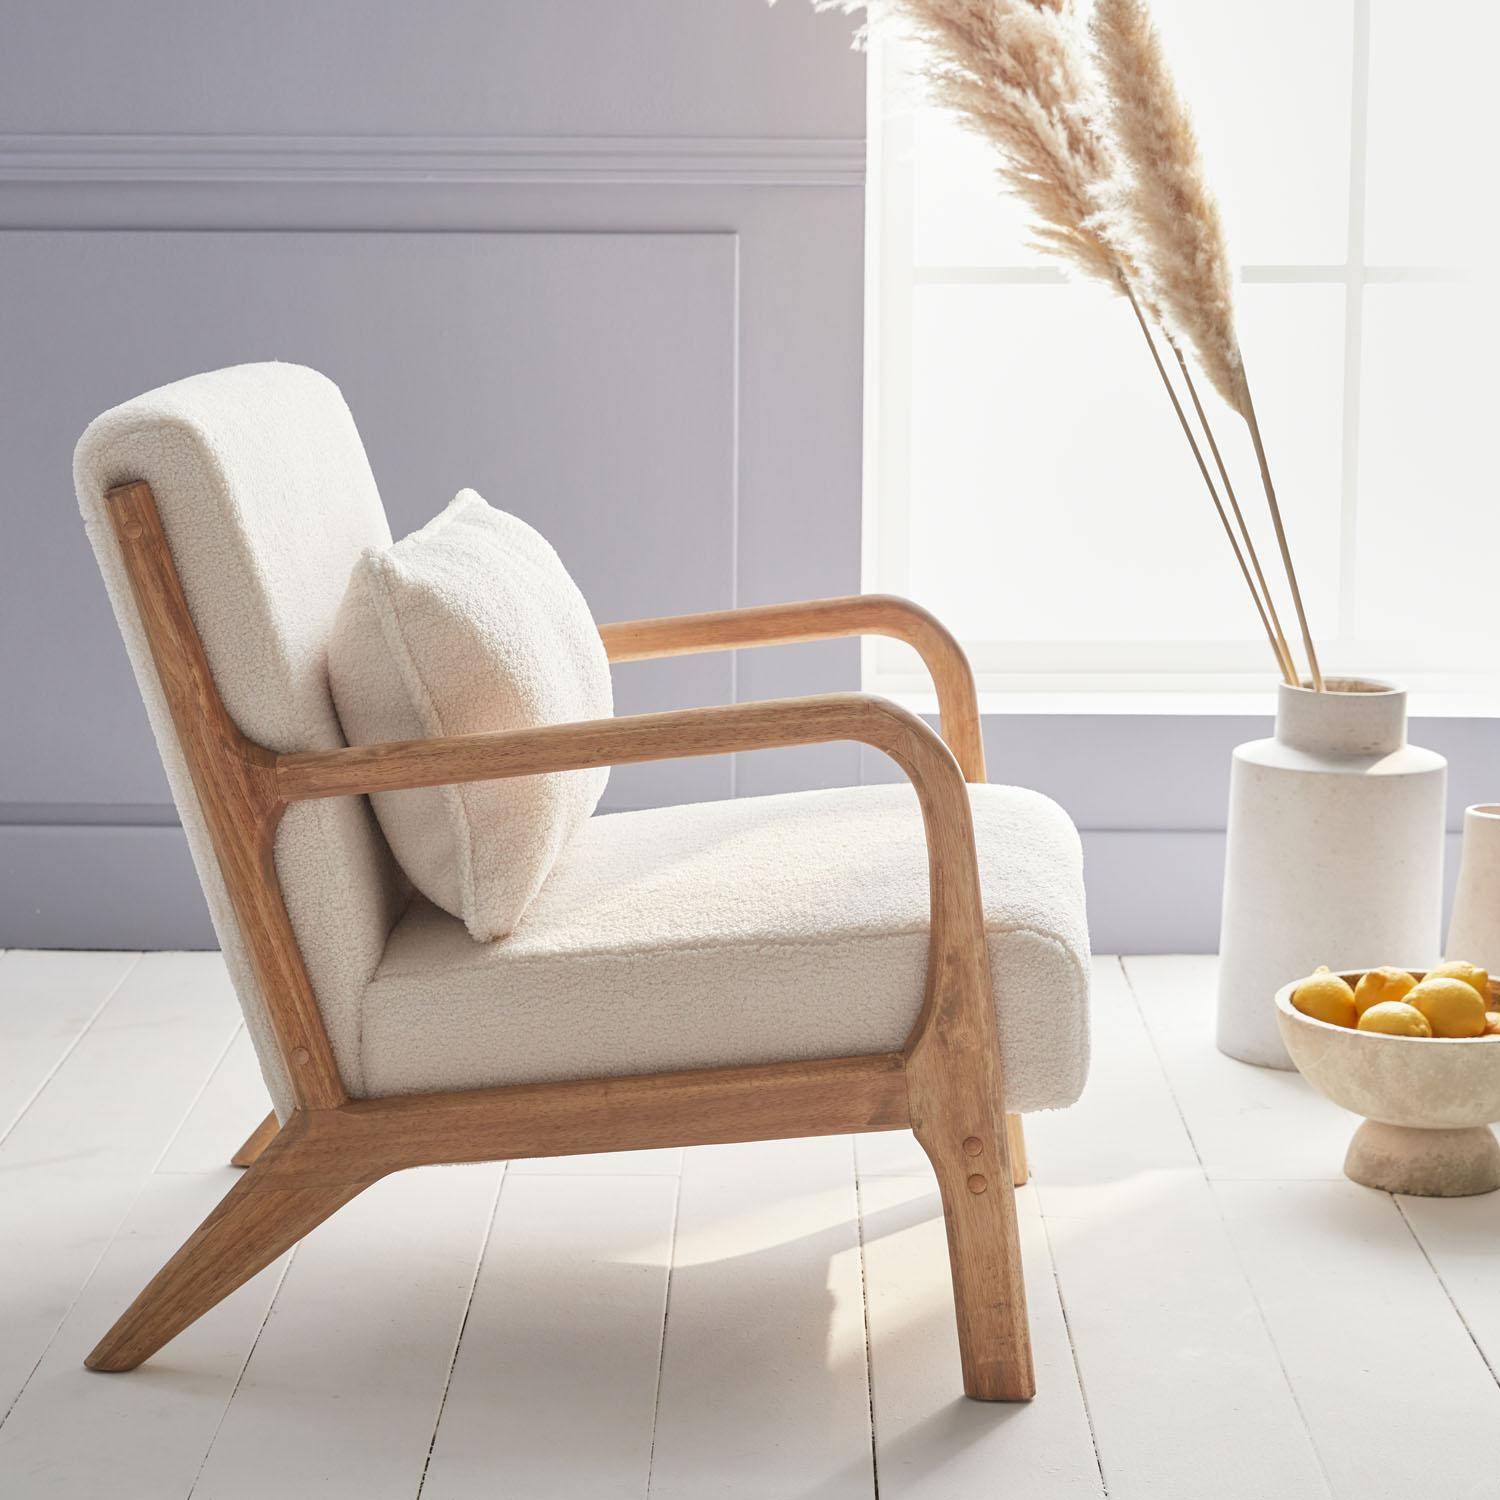 Poltrona di design in legno e tessuto bouclé, 1 seduta fissa diritta, gambe a compasso scandinave, beige Photo3